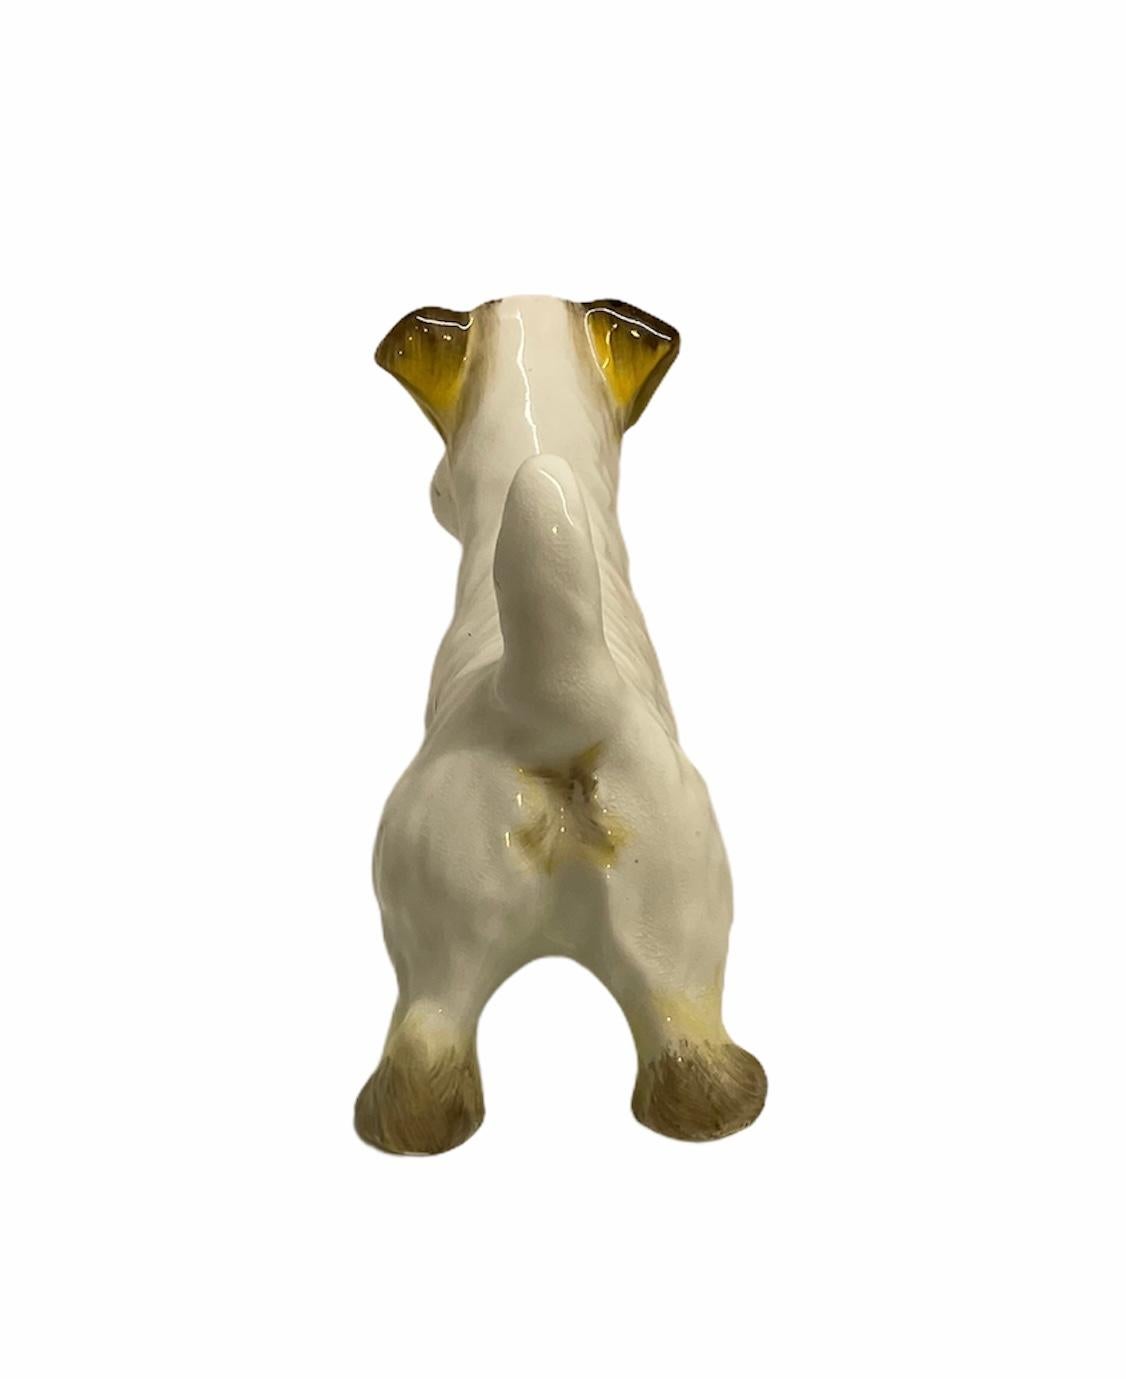 Il s'agit d'une adorable petite figurine en porcelaine anglaise représentant un chien écossais. Il est peint à la main en blanc et rehaussé de taches jaune-brunâtre. Très bien fait. Il est estampillé made in England dans l'une de ses pattes.